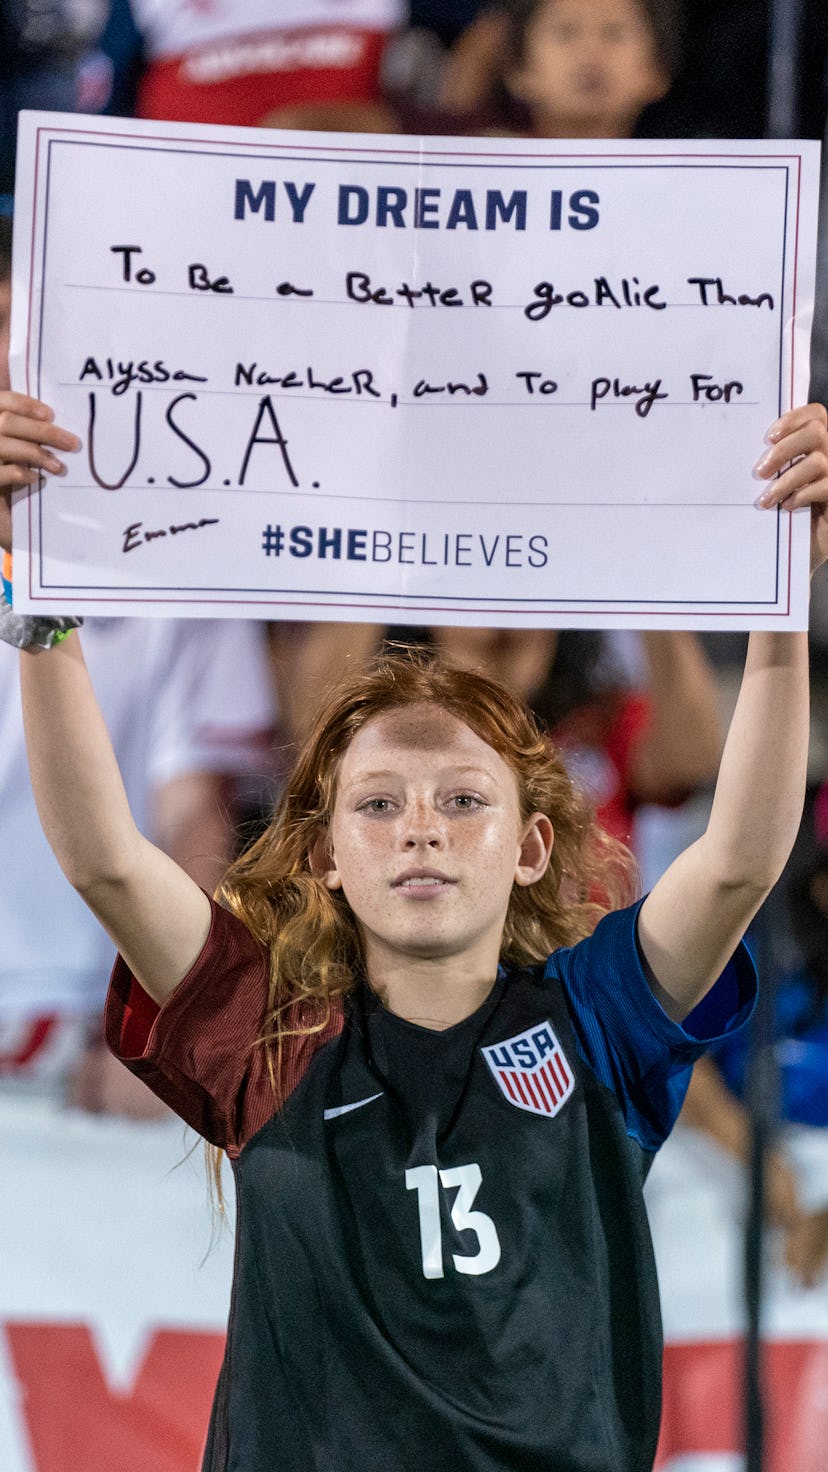 A fan of the U.S. women's national soccer team